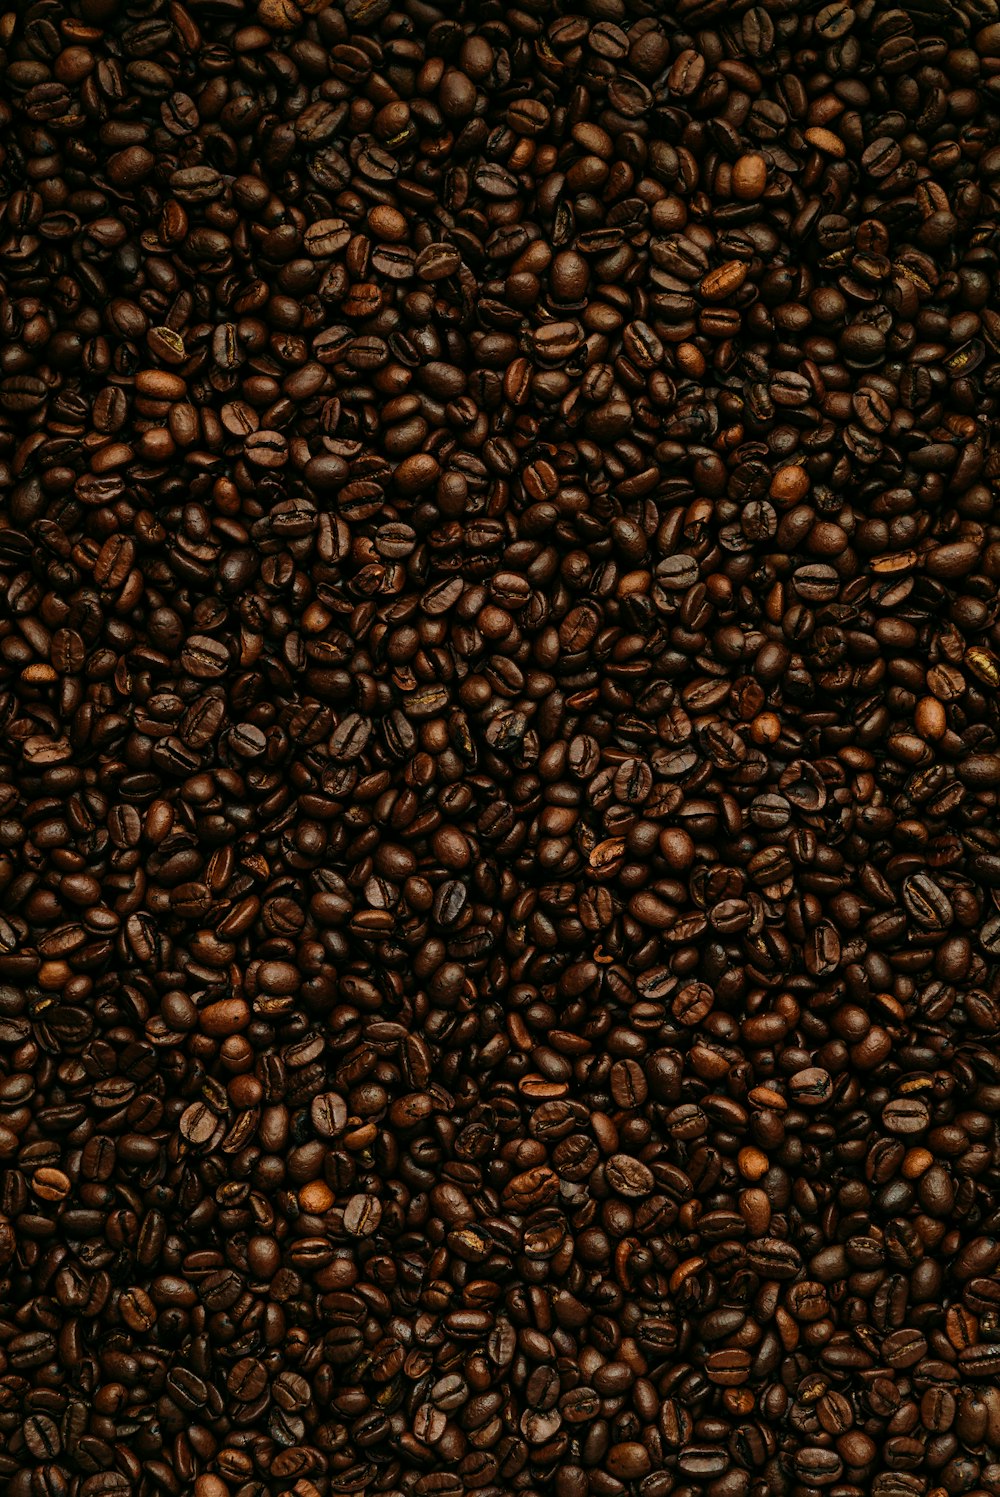 Textil con estampado de leopardo marrón y negro